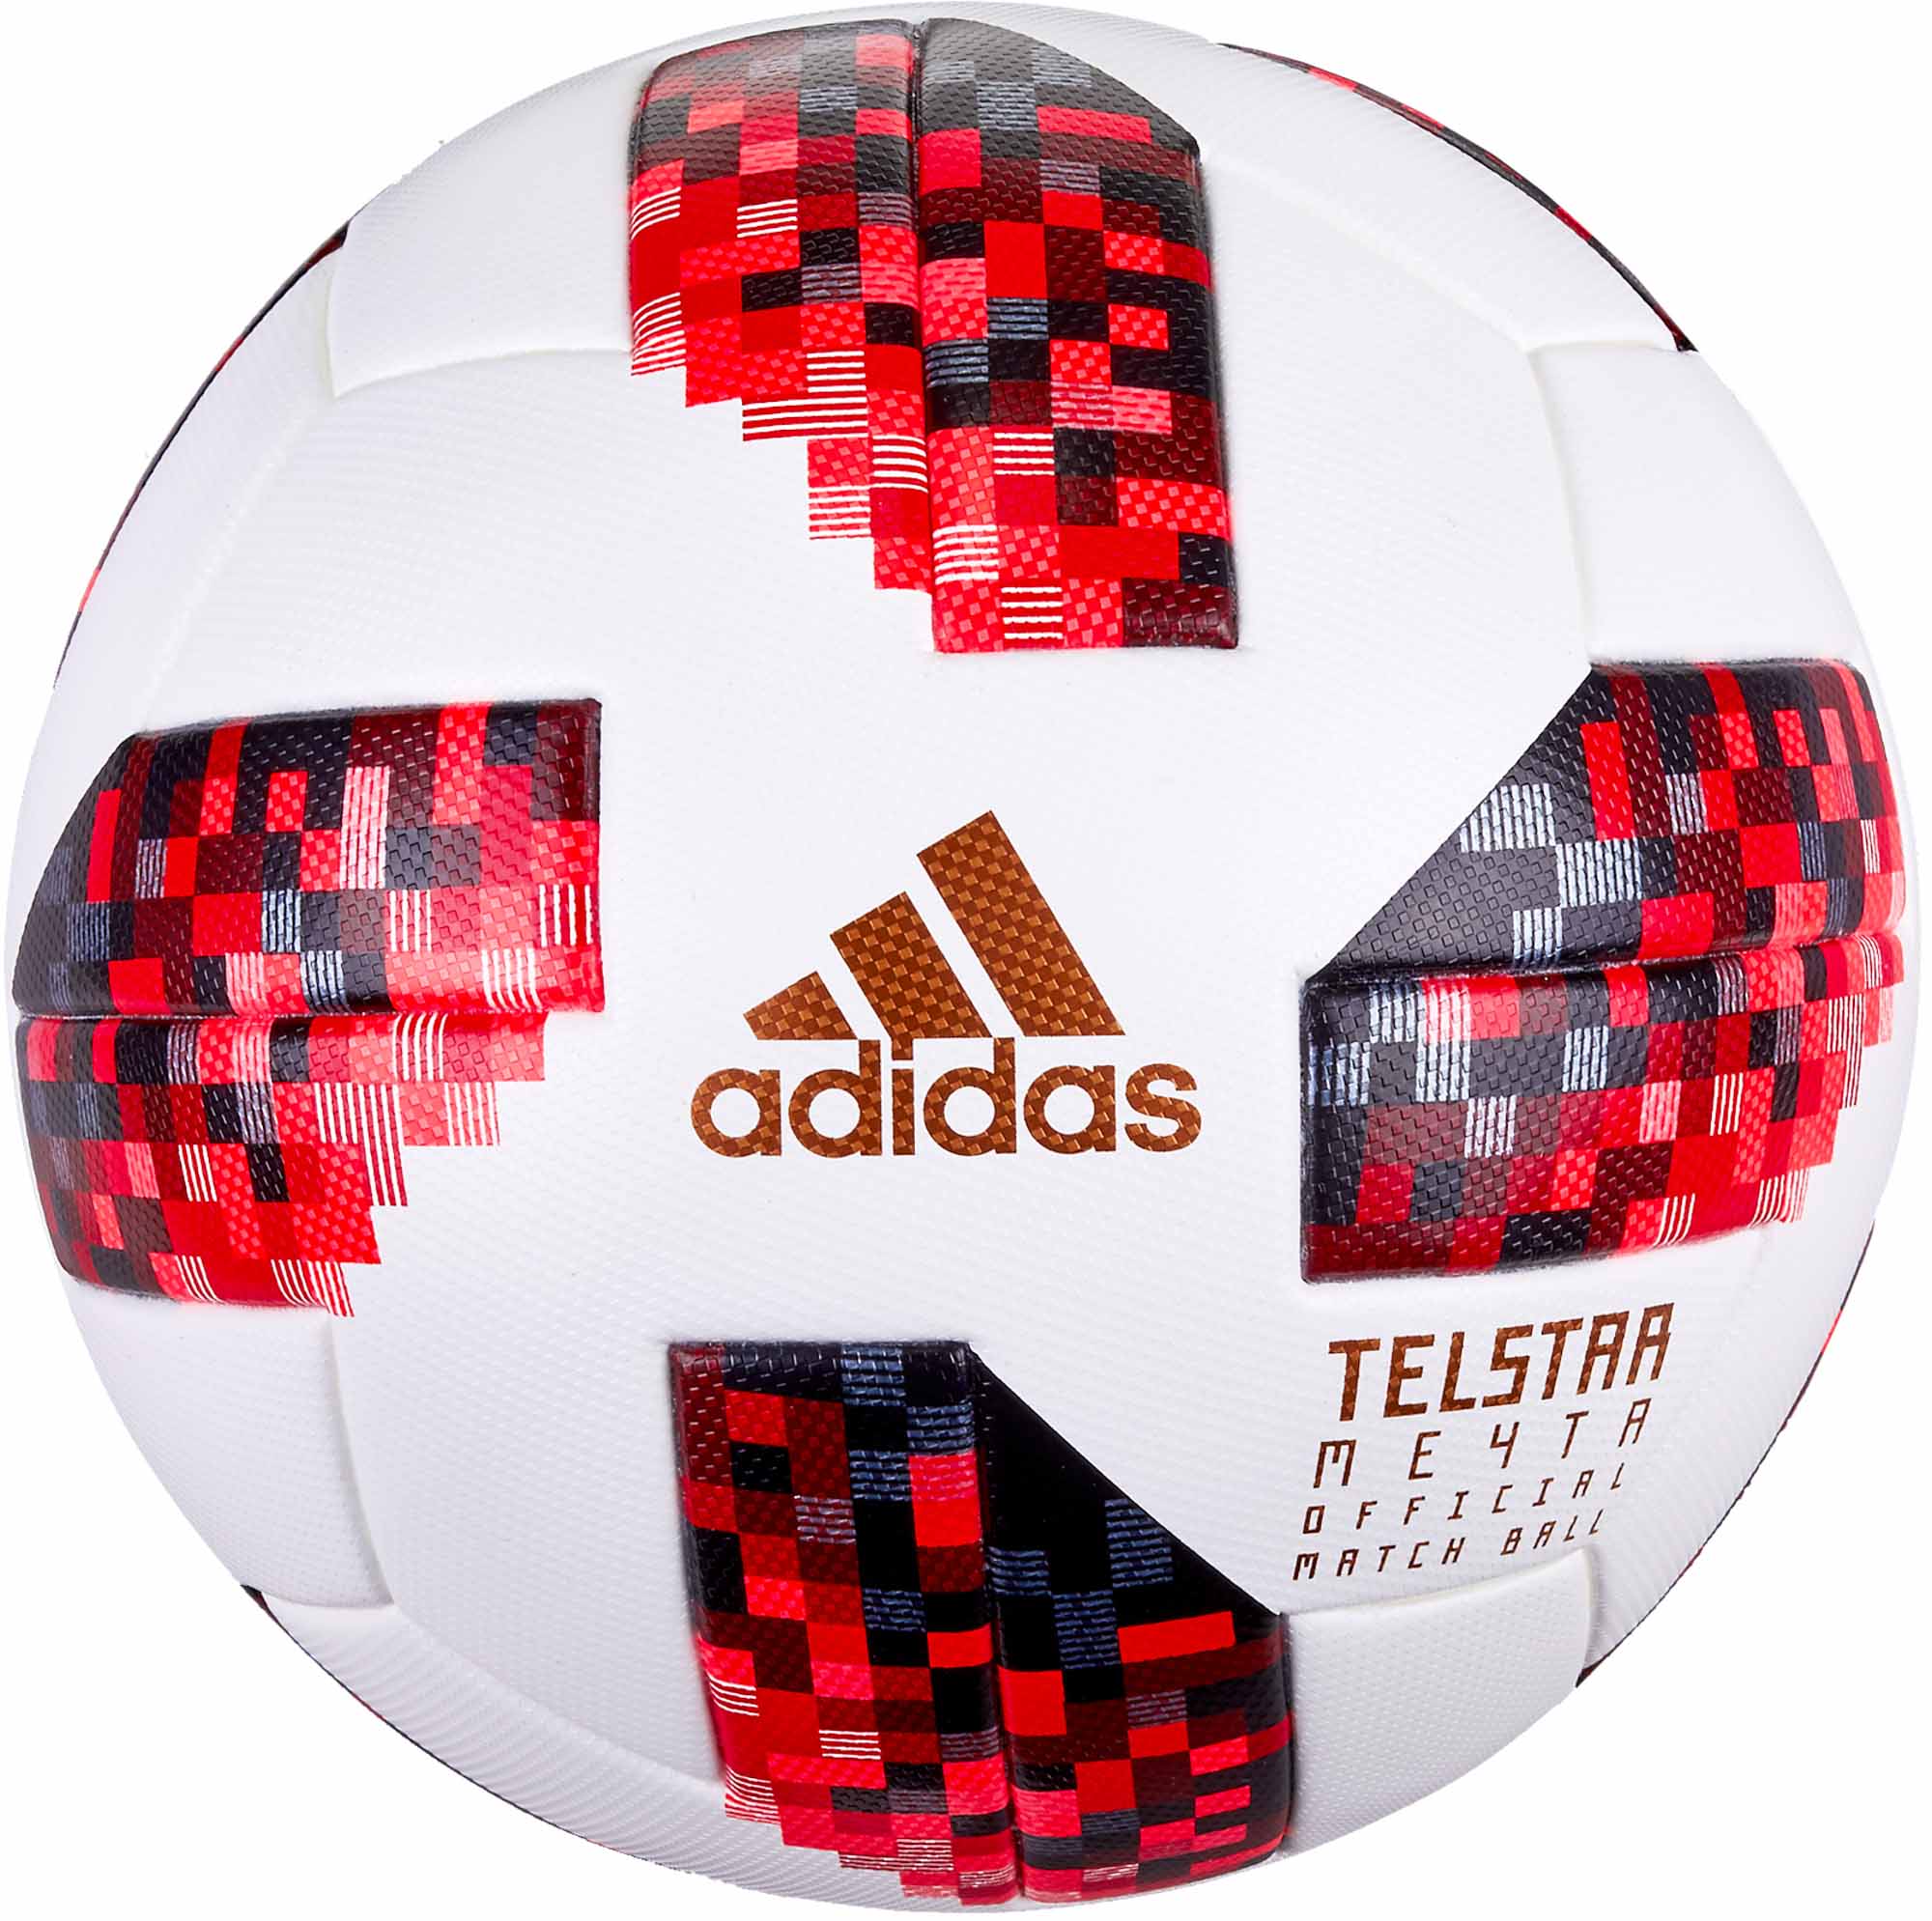 adidas telstar official match ball